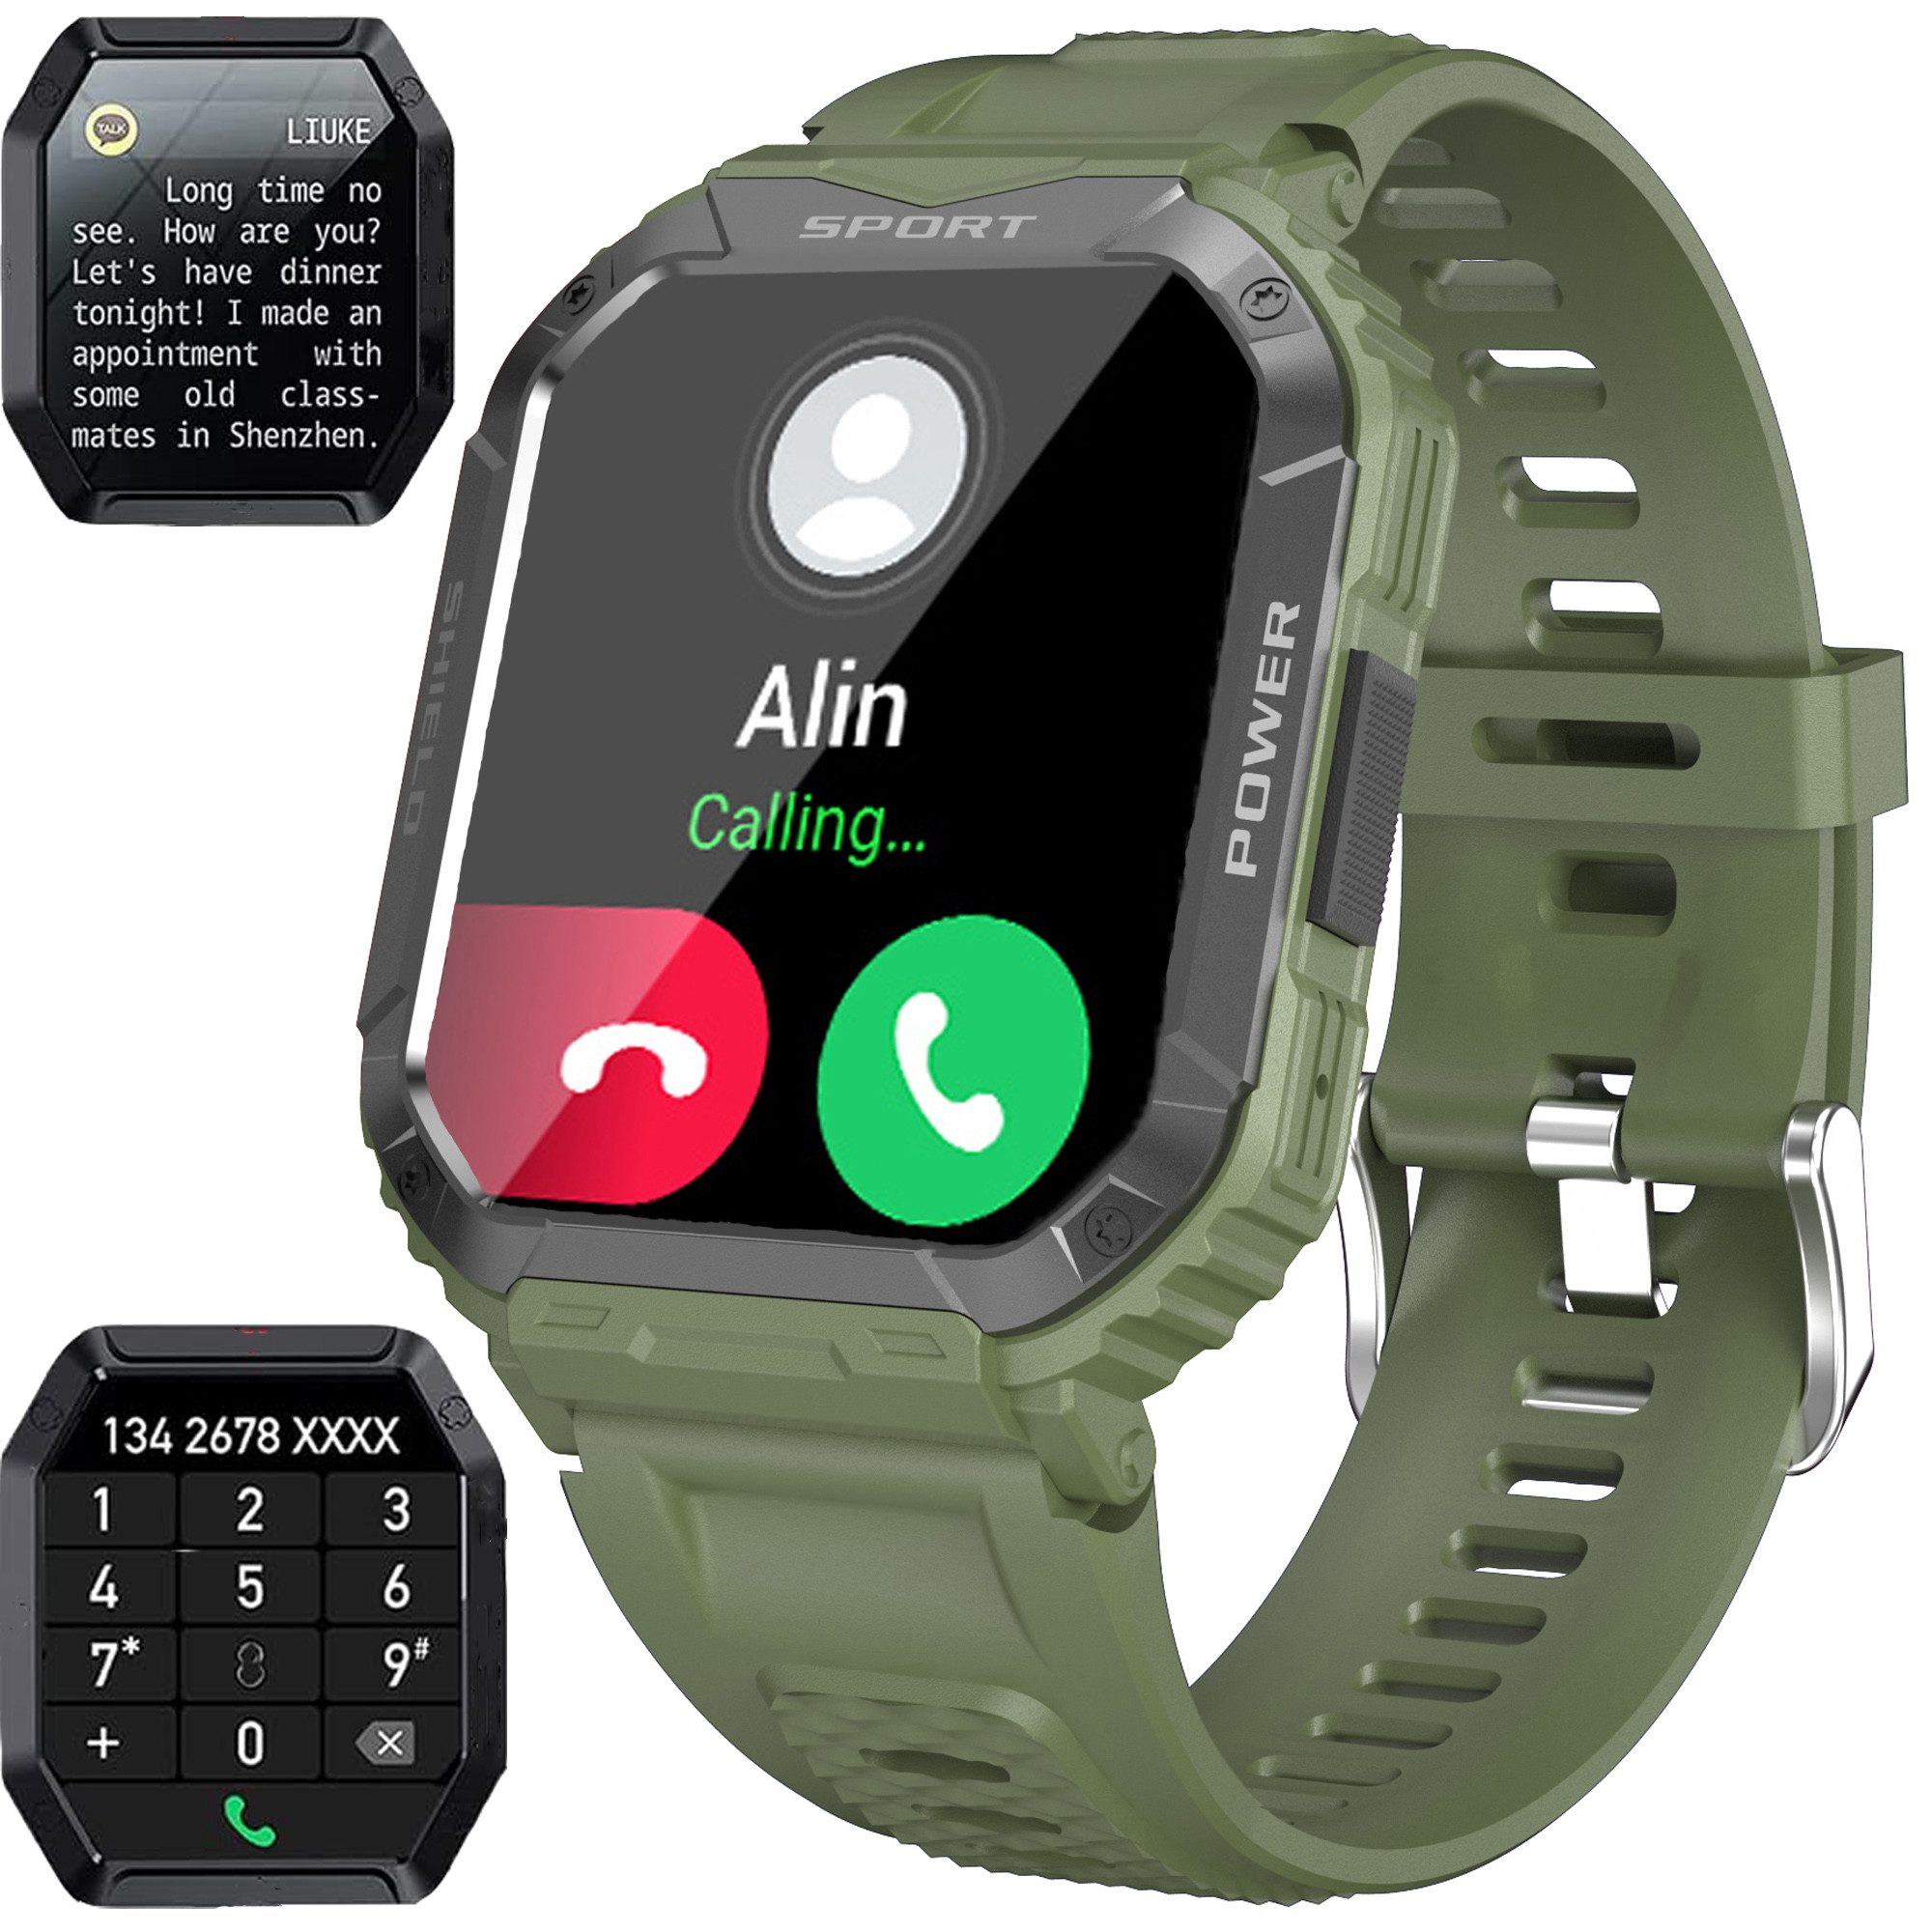 Sross Smartwatch Herren,mit Telefonfunktion, Fitness Tracker Uhr Smartwatch Sportuhr mit Blutdruck,SpO2,Herzfrequenz,Schrittzähler,Nachrichtenerinnerung, IP67 Wasserdicht,24 Sportmodi fitnessuhr für Android-iOS